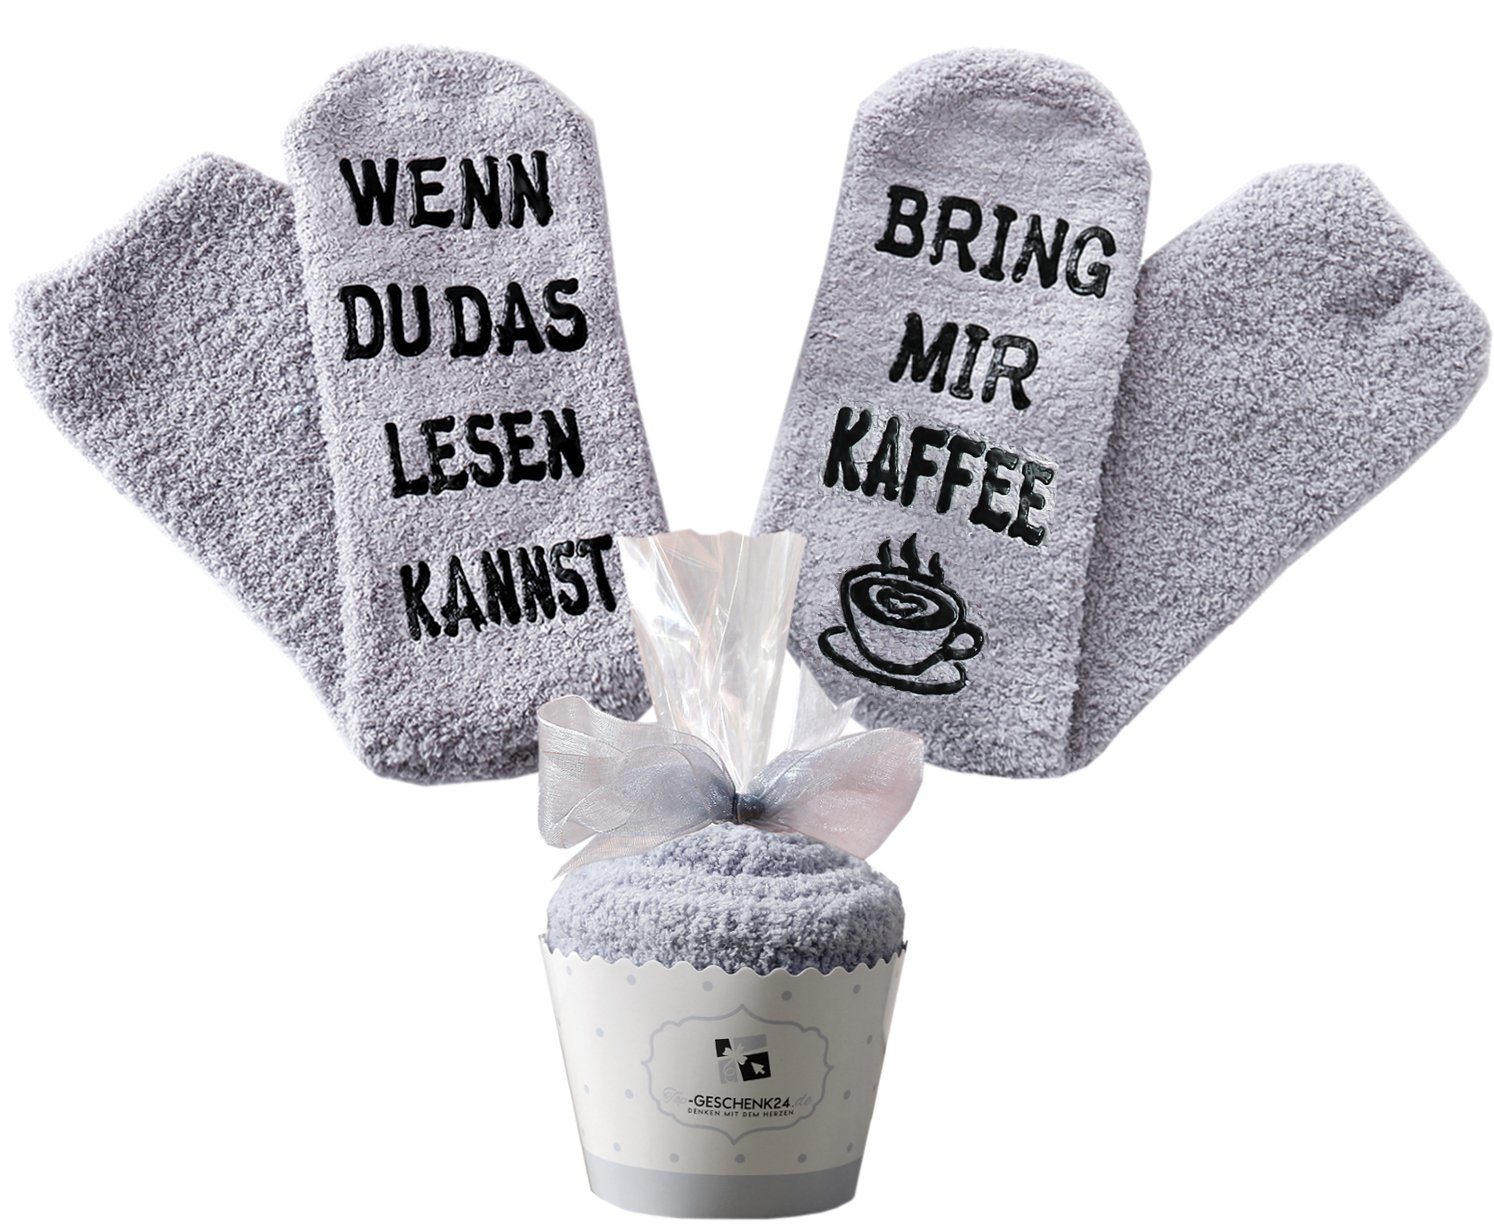 Lucadeau Kuschelsocken mit Spruch "Wenn du das lesen kannst, bring mir Kaffee" (Cupcake Verpackung, 1 Paar) rutschfest, Gr. 36-43, Geschenke für Frauen, Weihnachtsgeschenke Grau